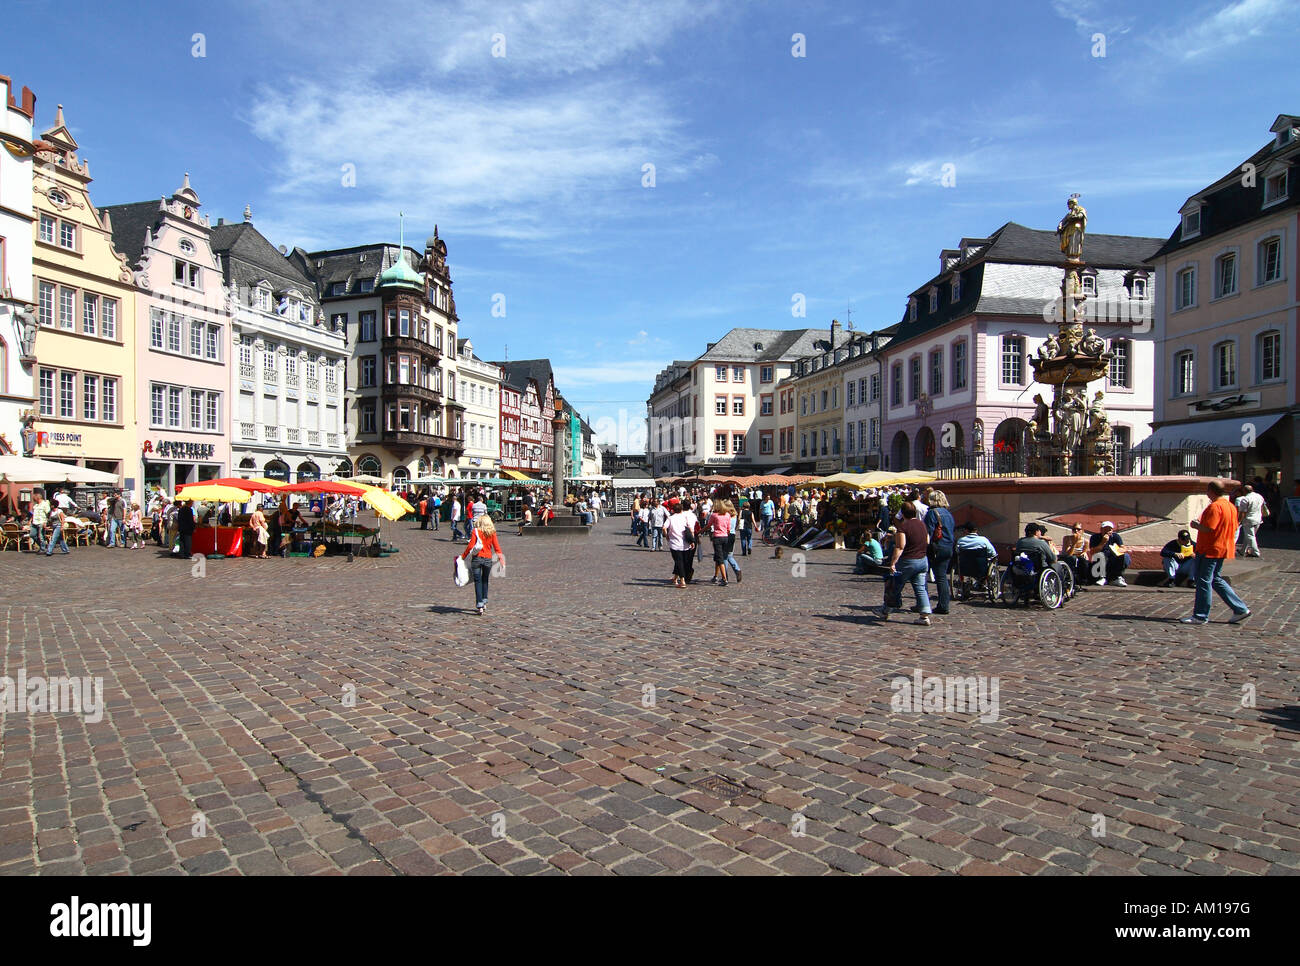 Markert place, il centro della città vecchia, Trier, Renania-Palatinato, Germania Foto Stock